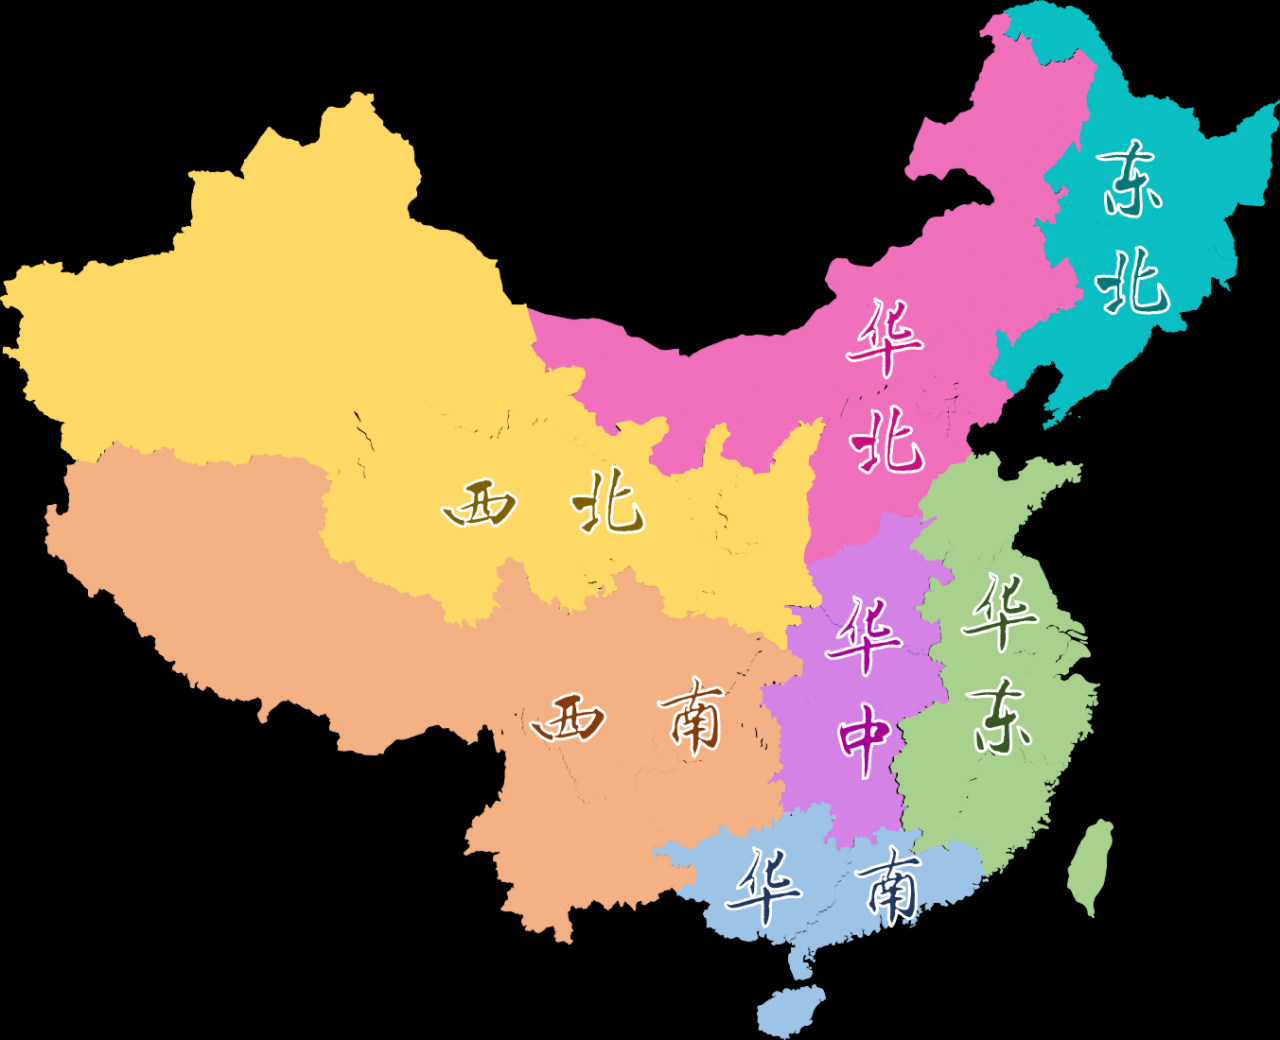 中国区域划分 - 七大地理分区，华东，华北，华南，华中，东北